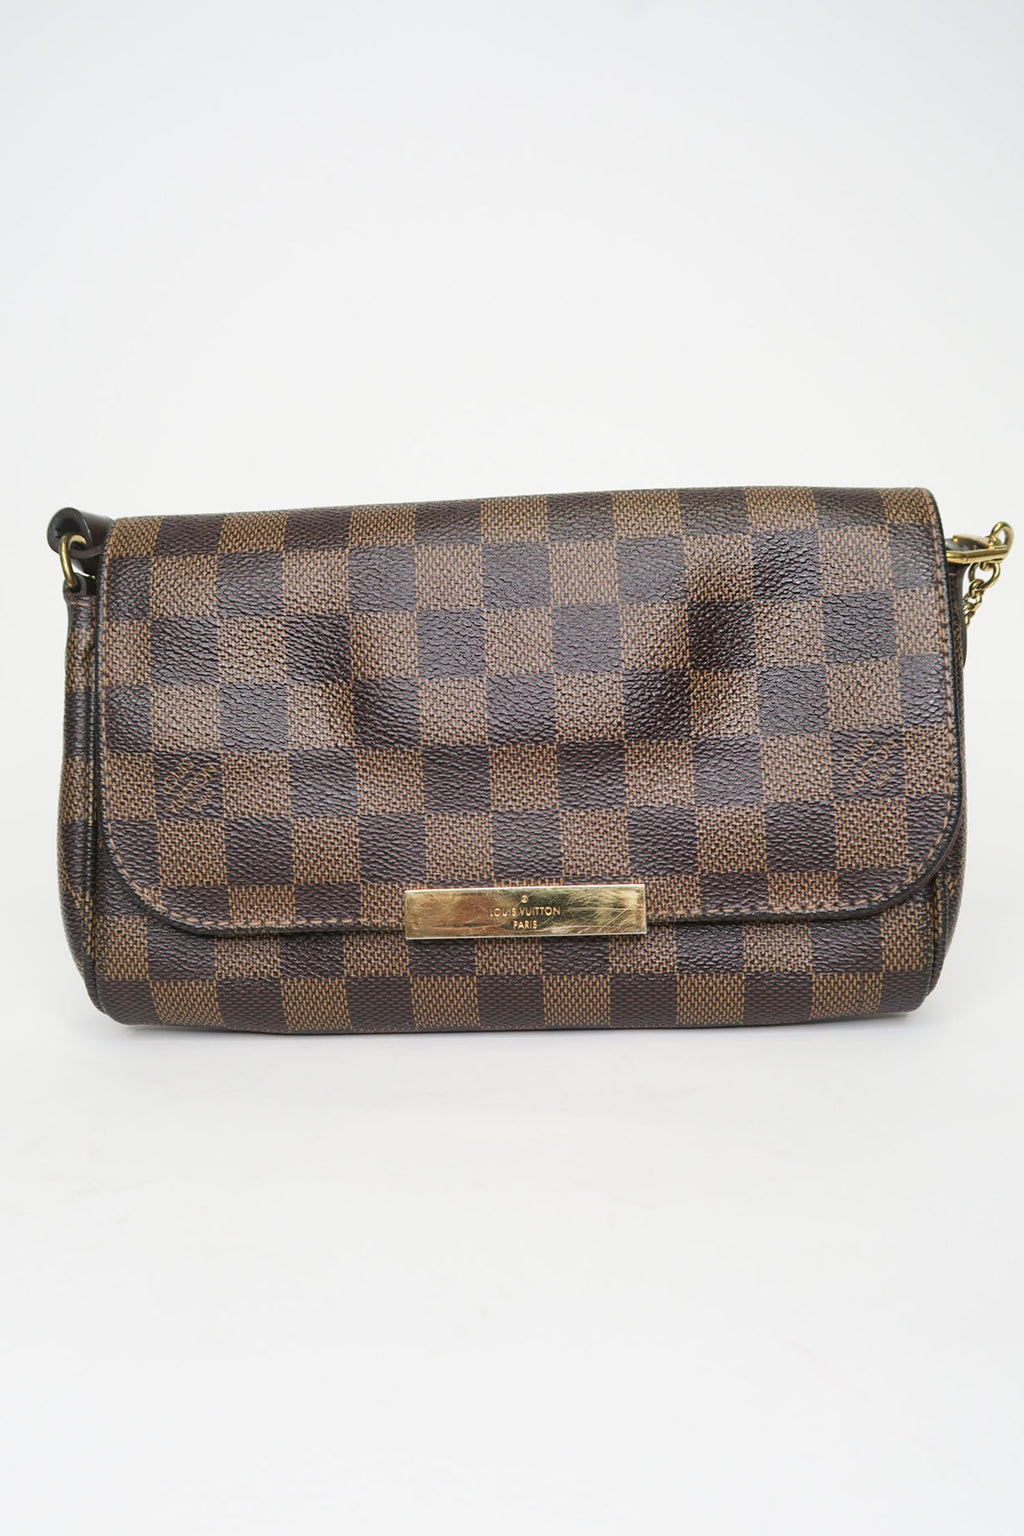 Authentic Louis Vuitton Damier Ebene Favorite MM Shoulder Bag